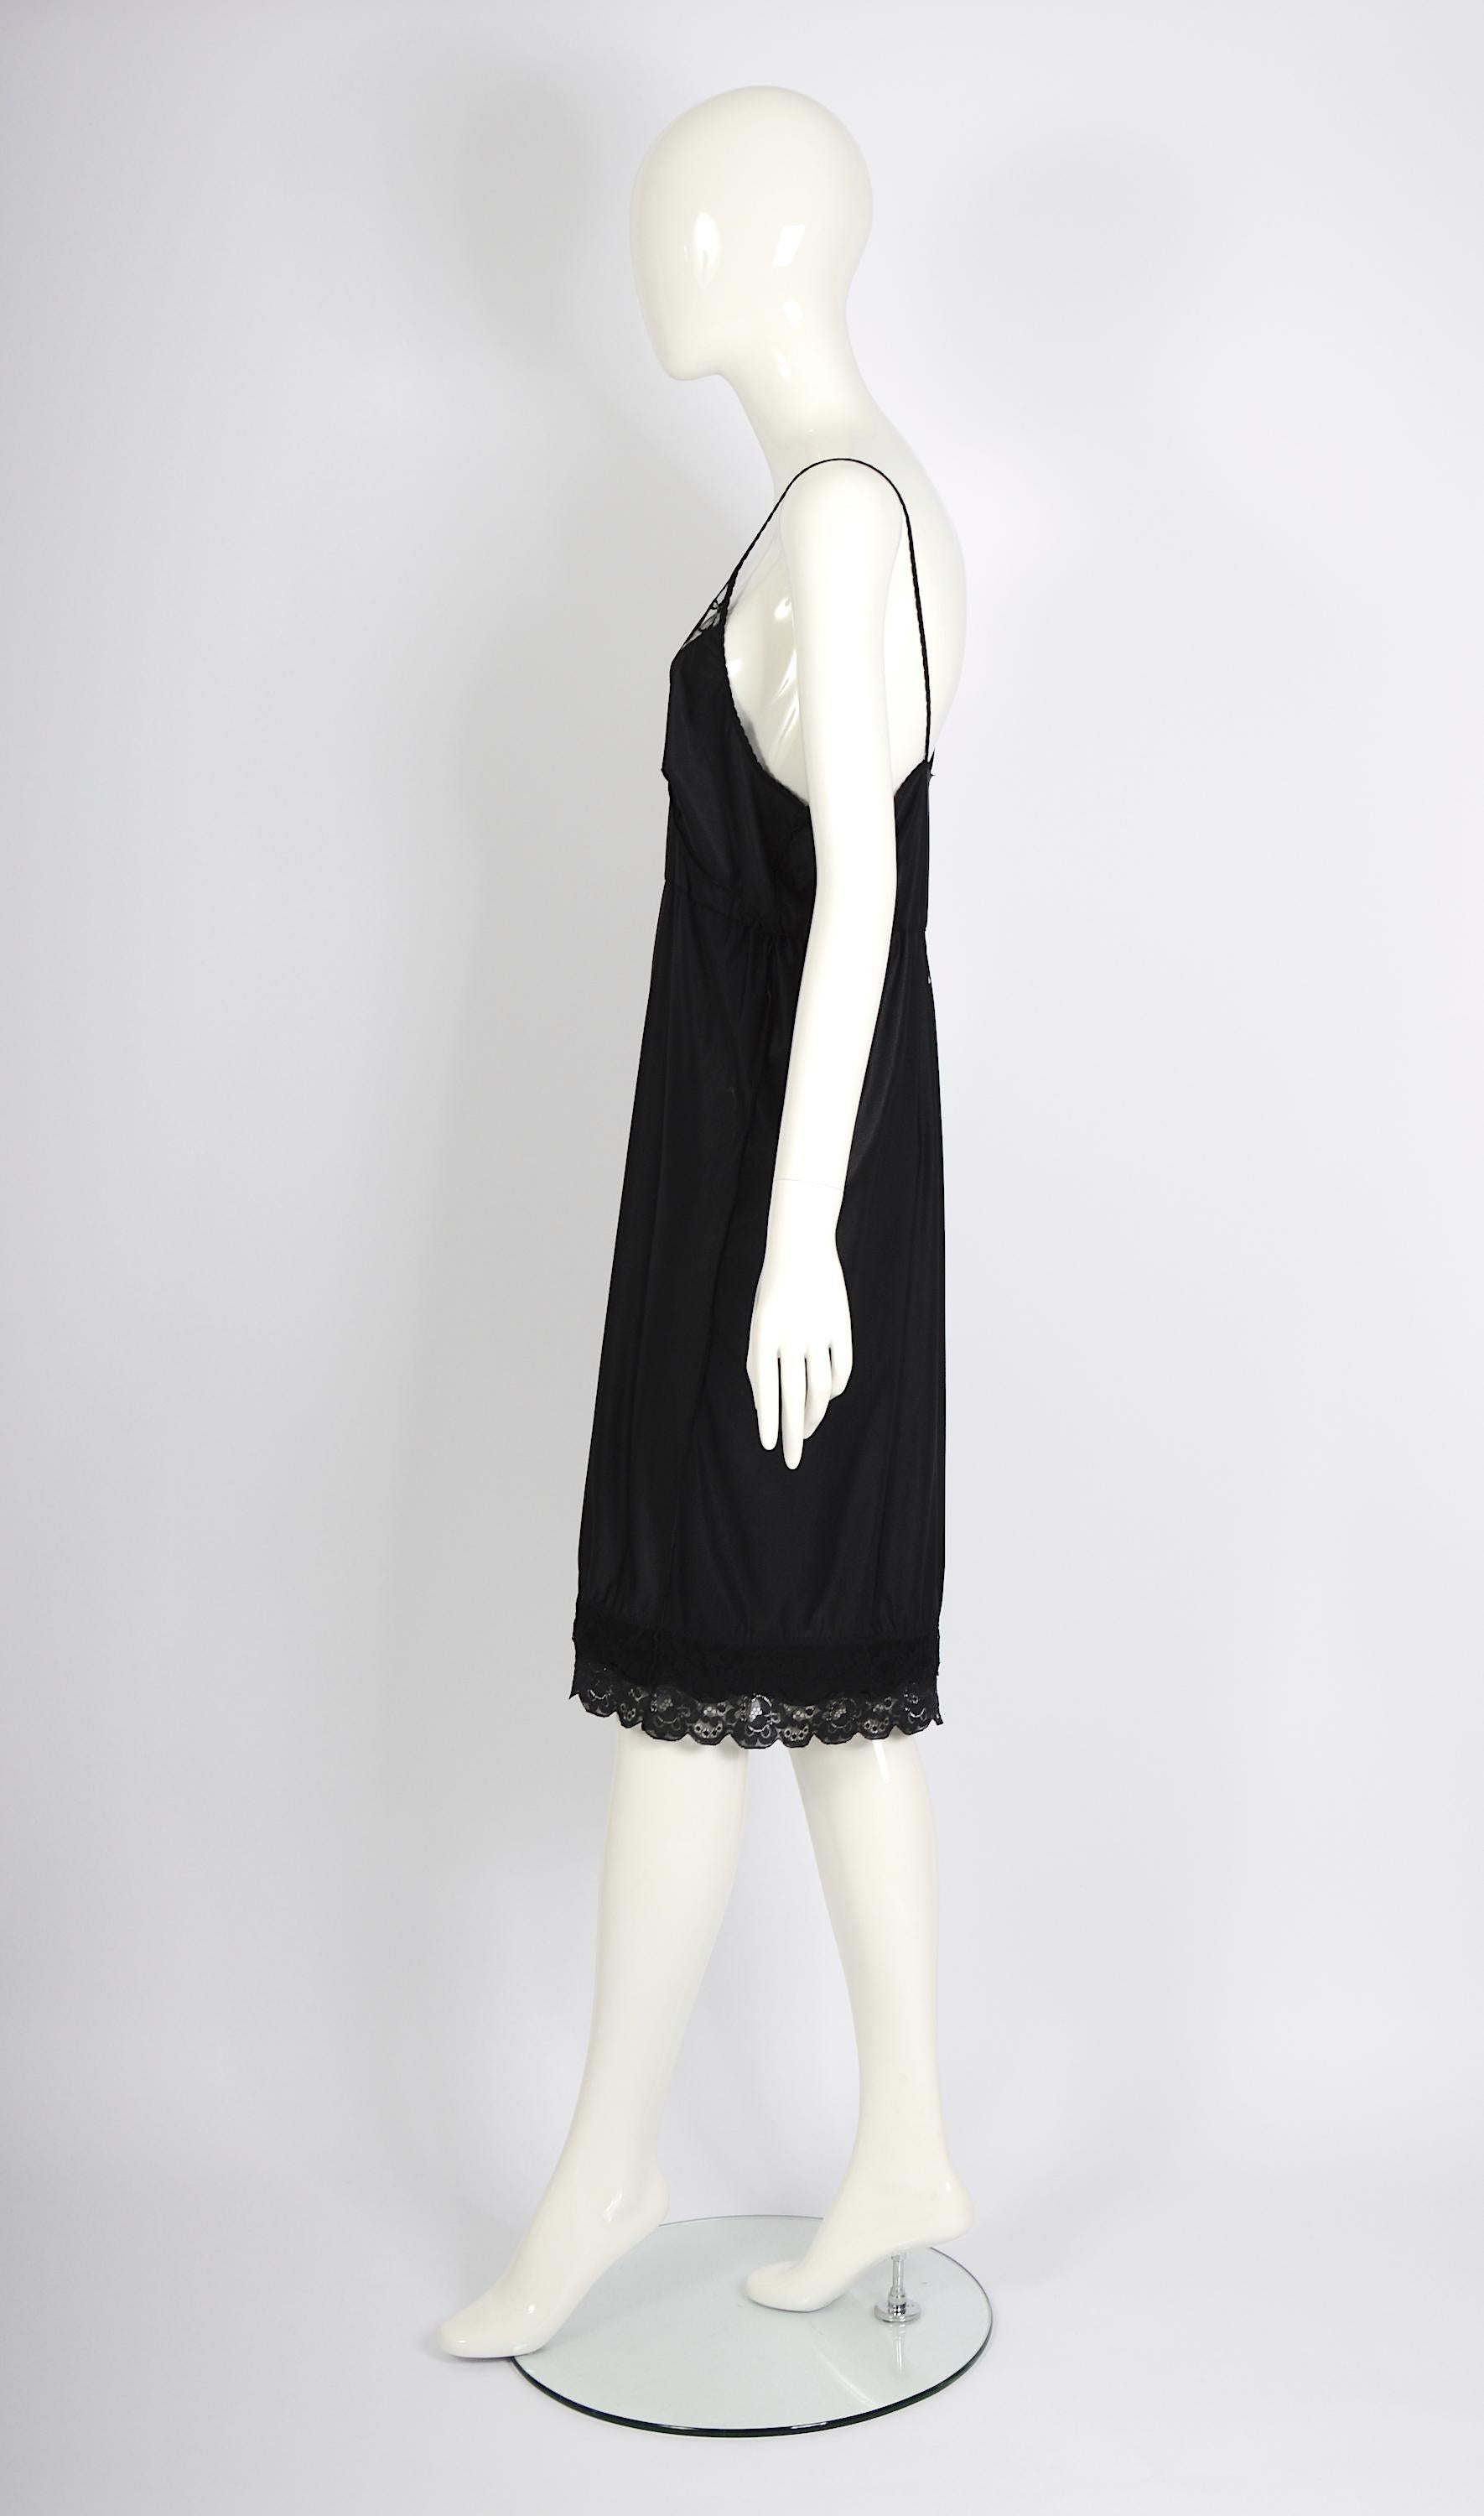 Vintage Martin Margiela artisanal ss 2003 runway black folded dress skirt For Sale 6